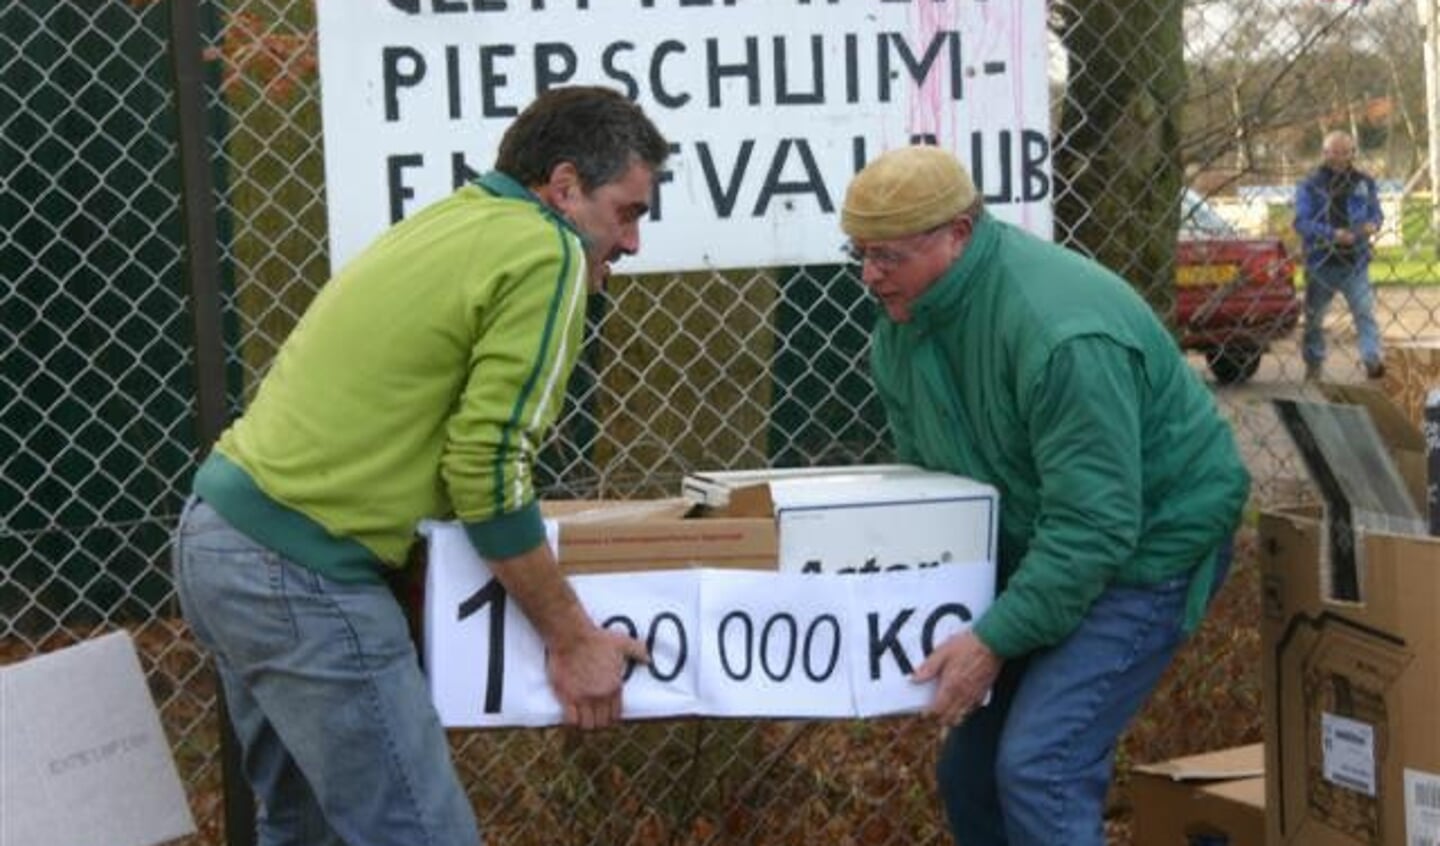 1.000.000 kilo in 2007 voor John Bogers en Ger van Tilburg.